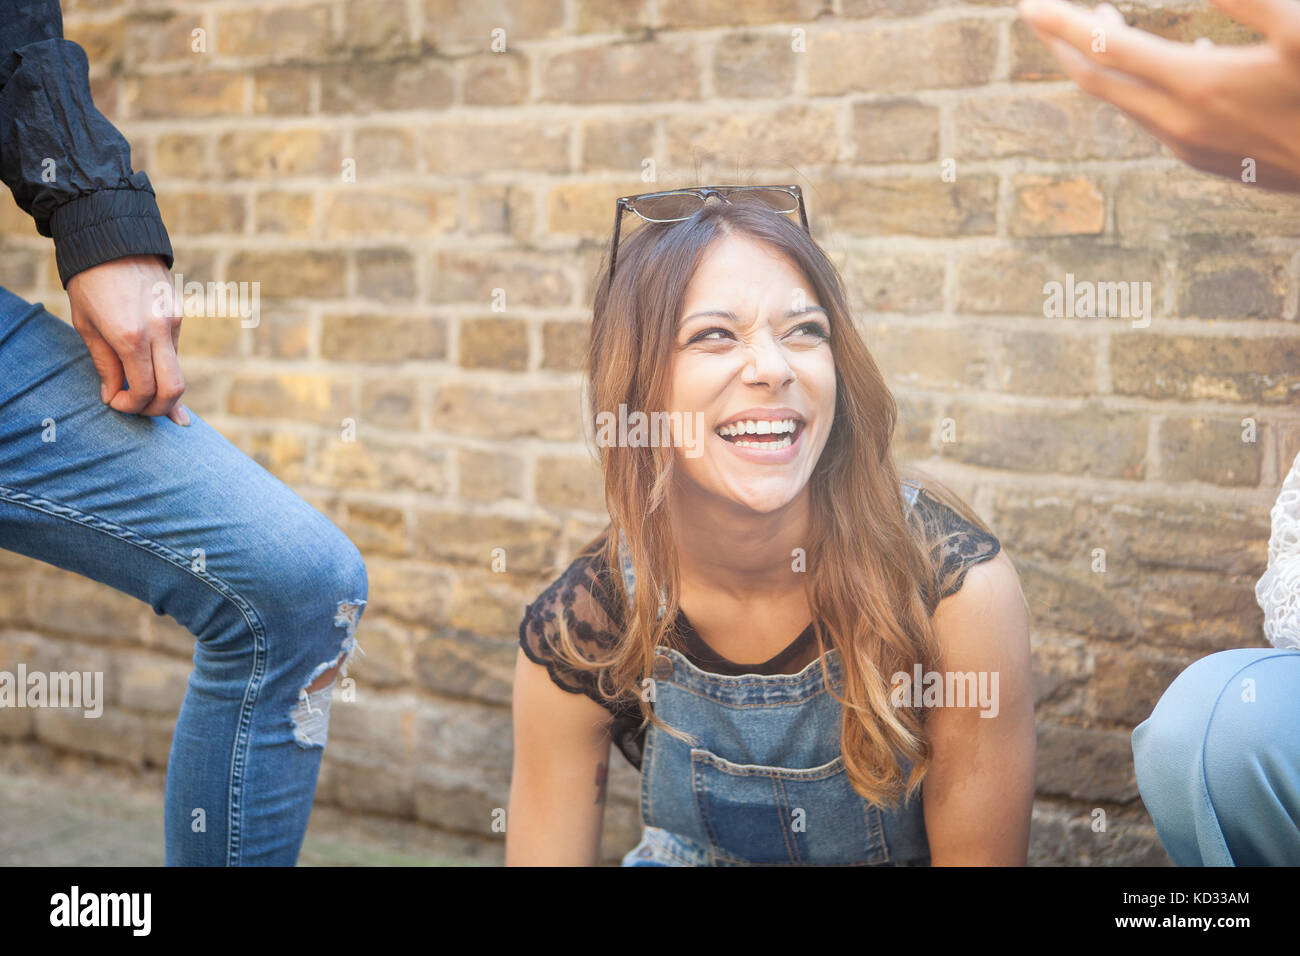 Groupe de jeunes amis à l'extérieur, young woman laughing Banque D'Images